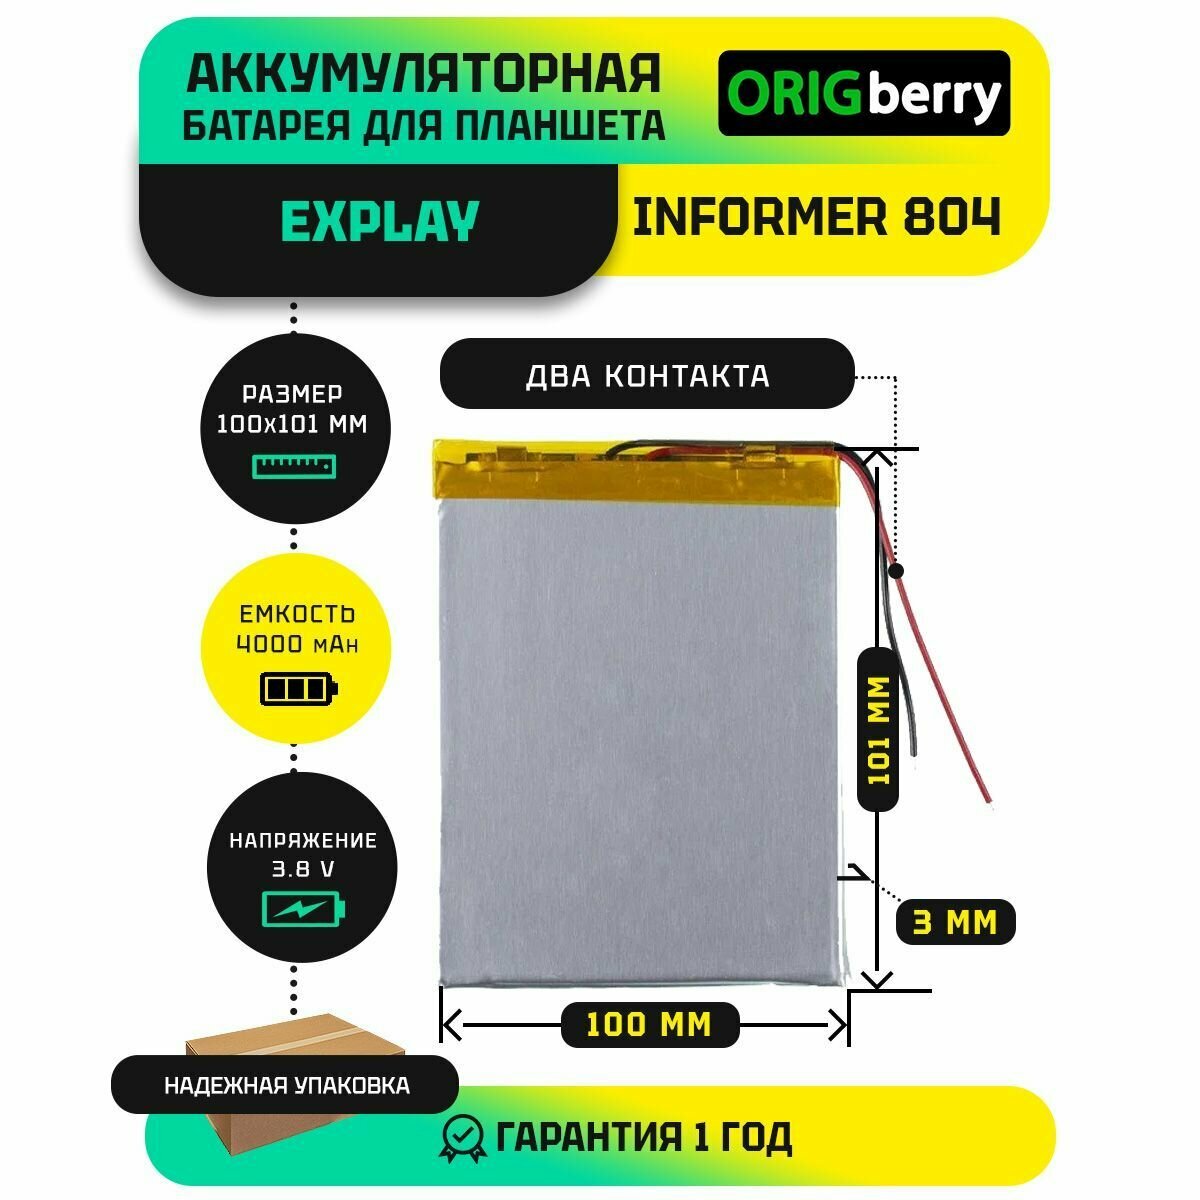 Аккумулятор для планшета Explay Informer 804 3,8 V / 4000 mAh / 101мм x 100мм x 3мм / без коннектора